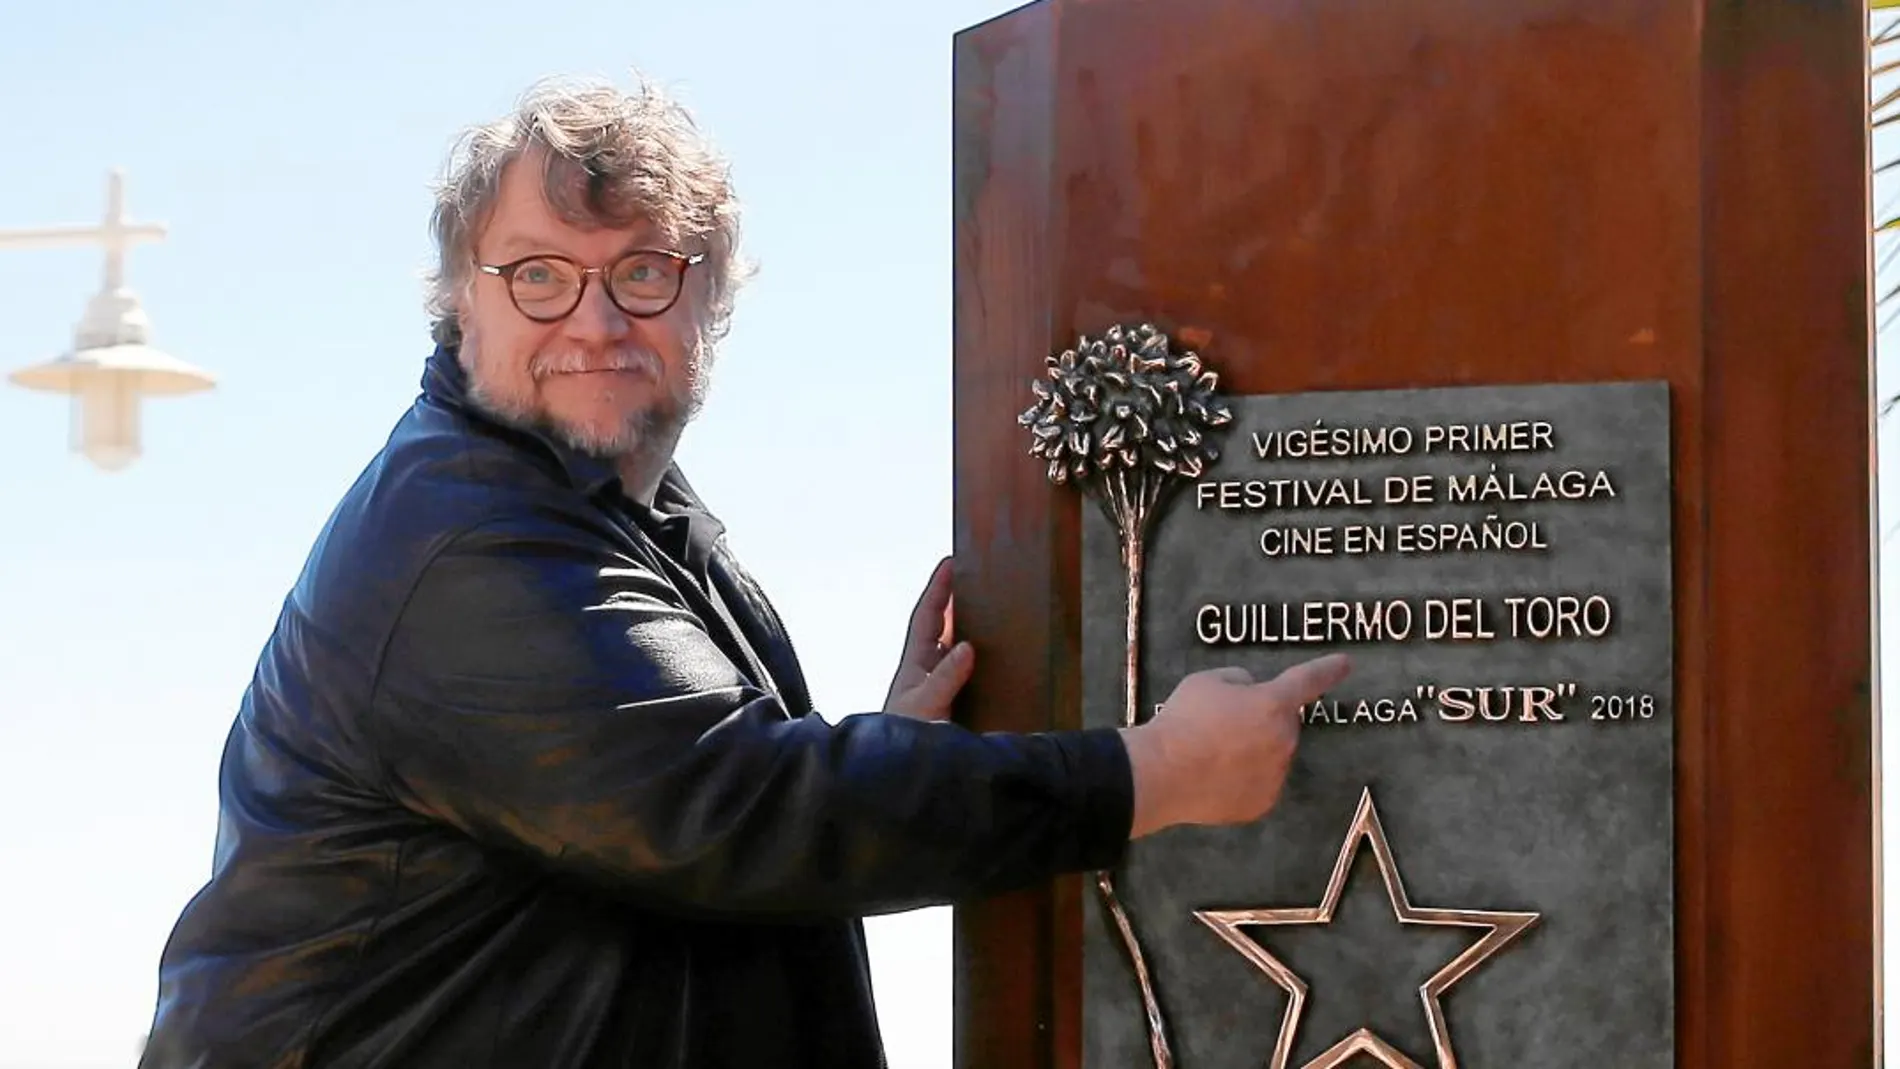 El director Guillermo del Toro fue homenajeado ayer en el Festival de Cine español de Málaga, donde lució el sol